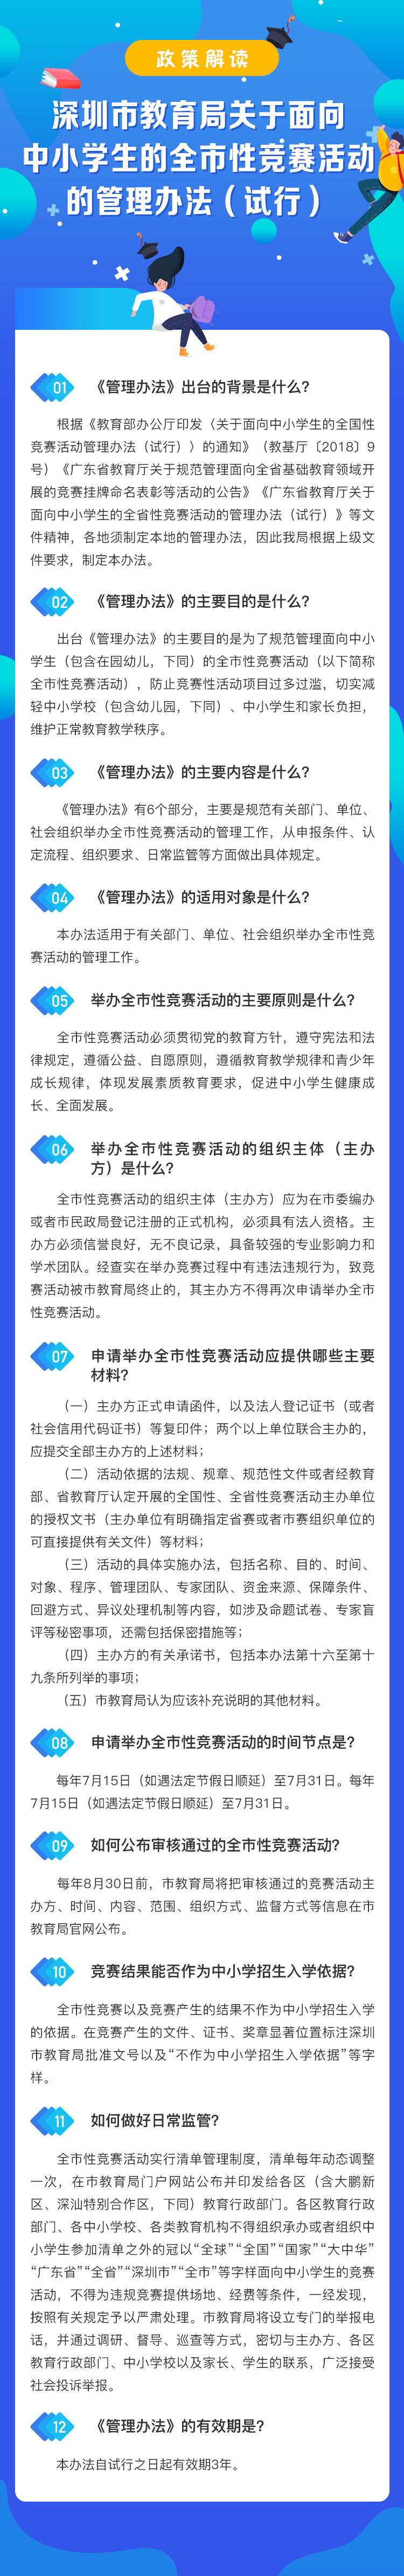 深圳市教育局关于面向中小学生的全市性竞赛活动的管理办法.jpg